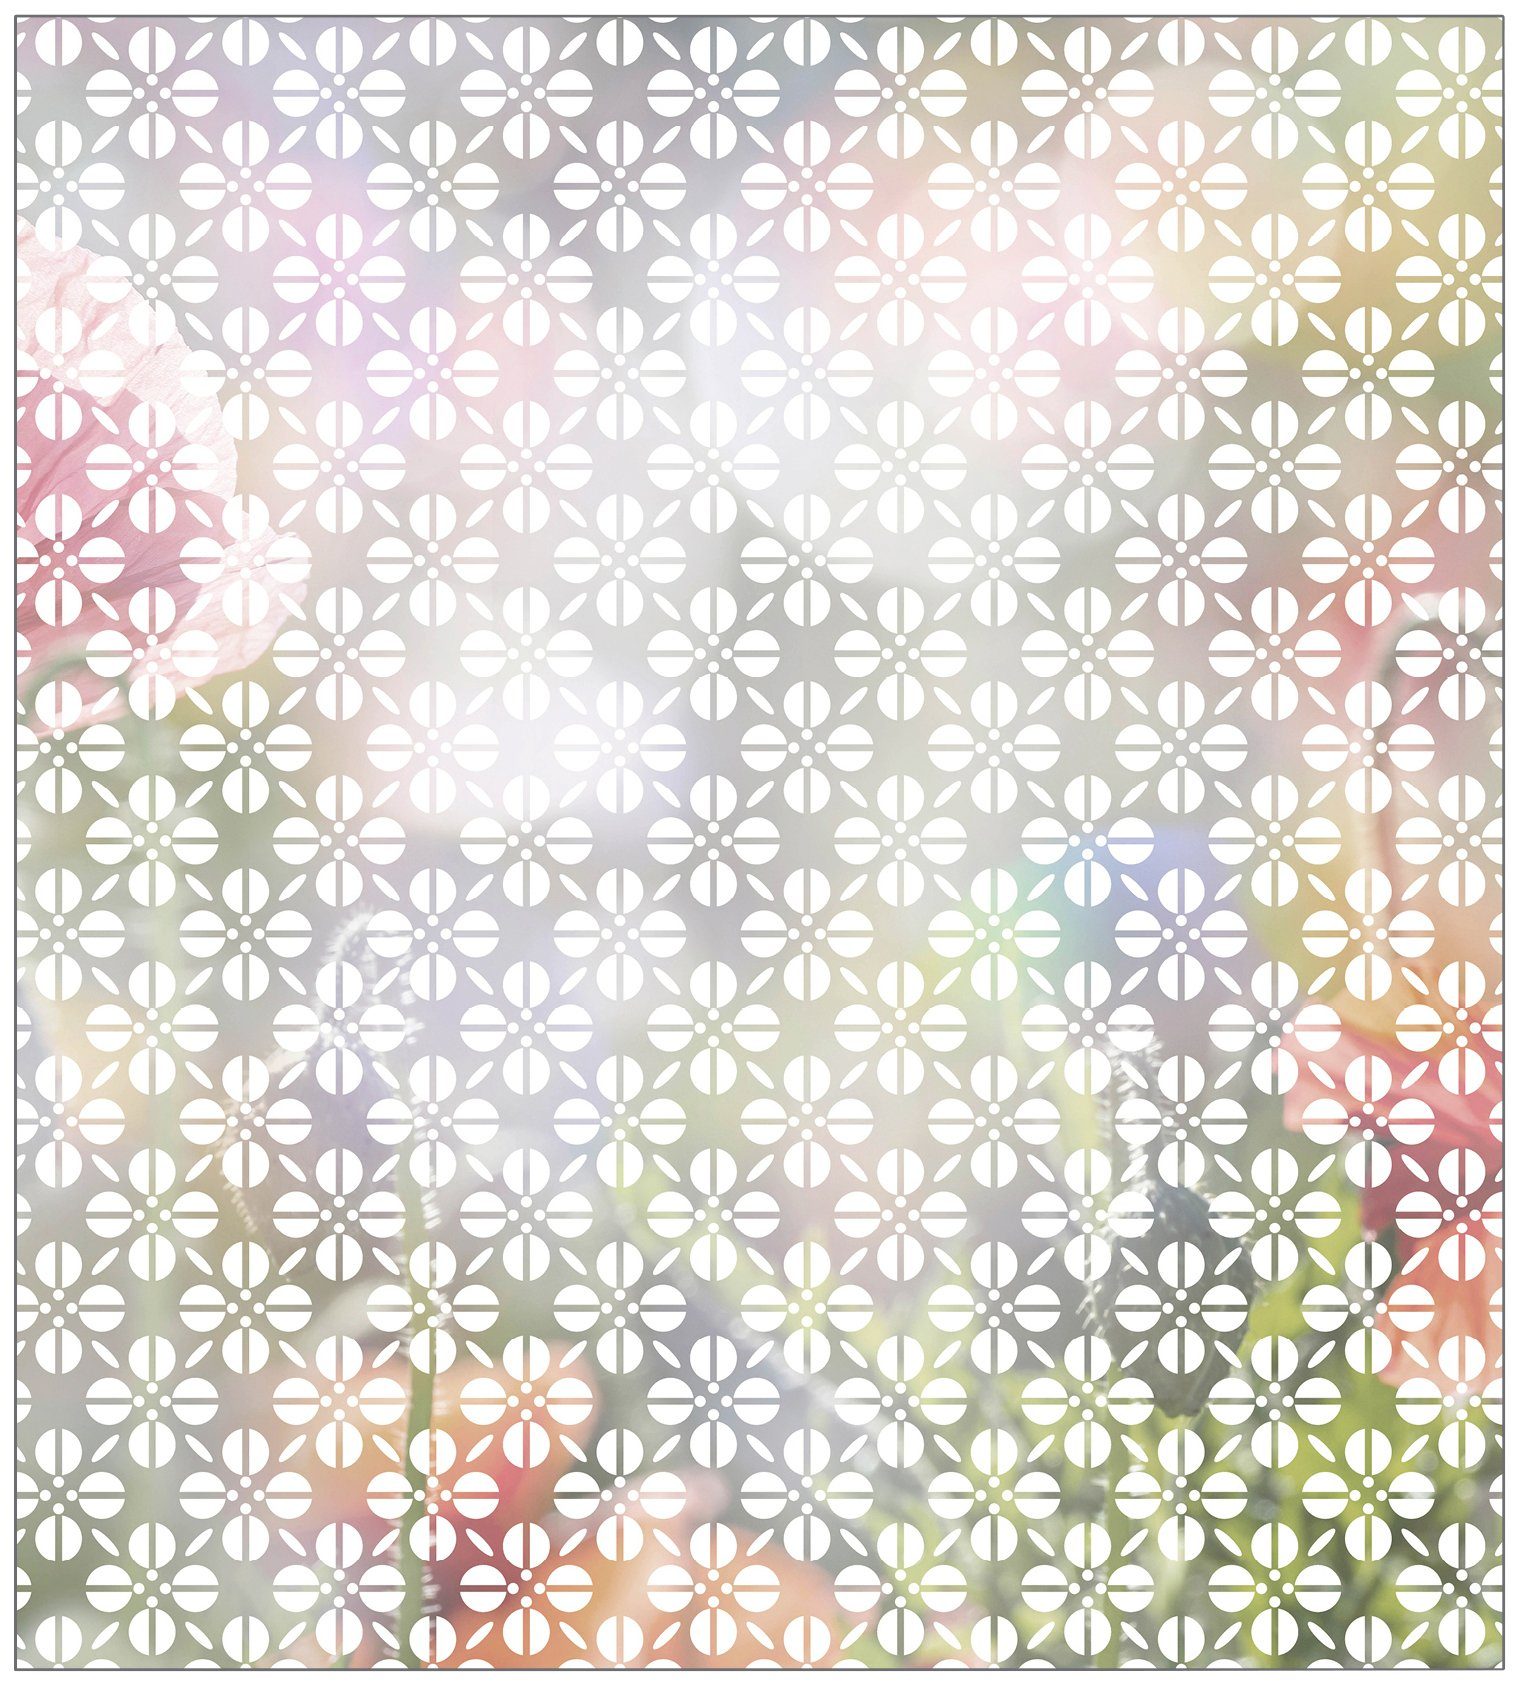 Fensterfolie Look Grafik halbtransparent, 90 Blumenmuster MySpotti, white, x statisch glatt, cm, 100 haftend